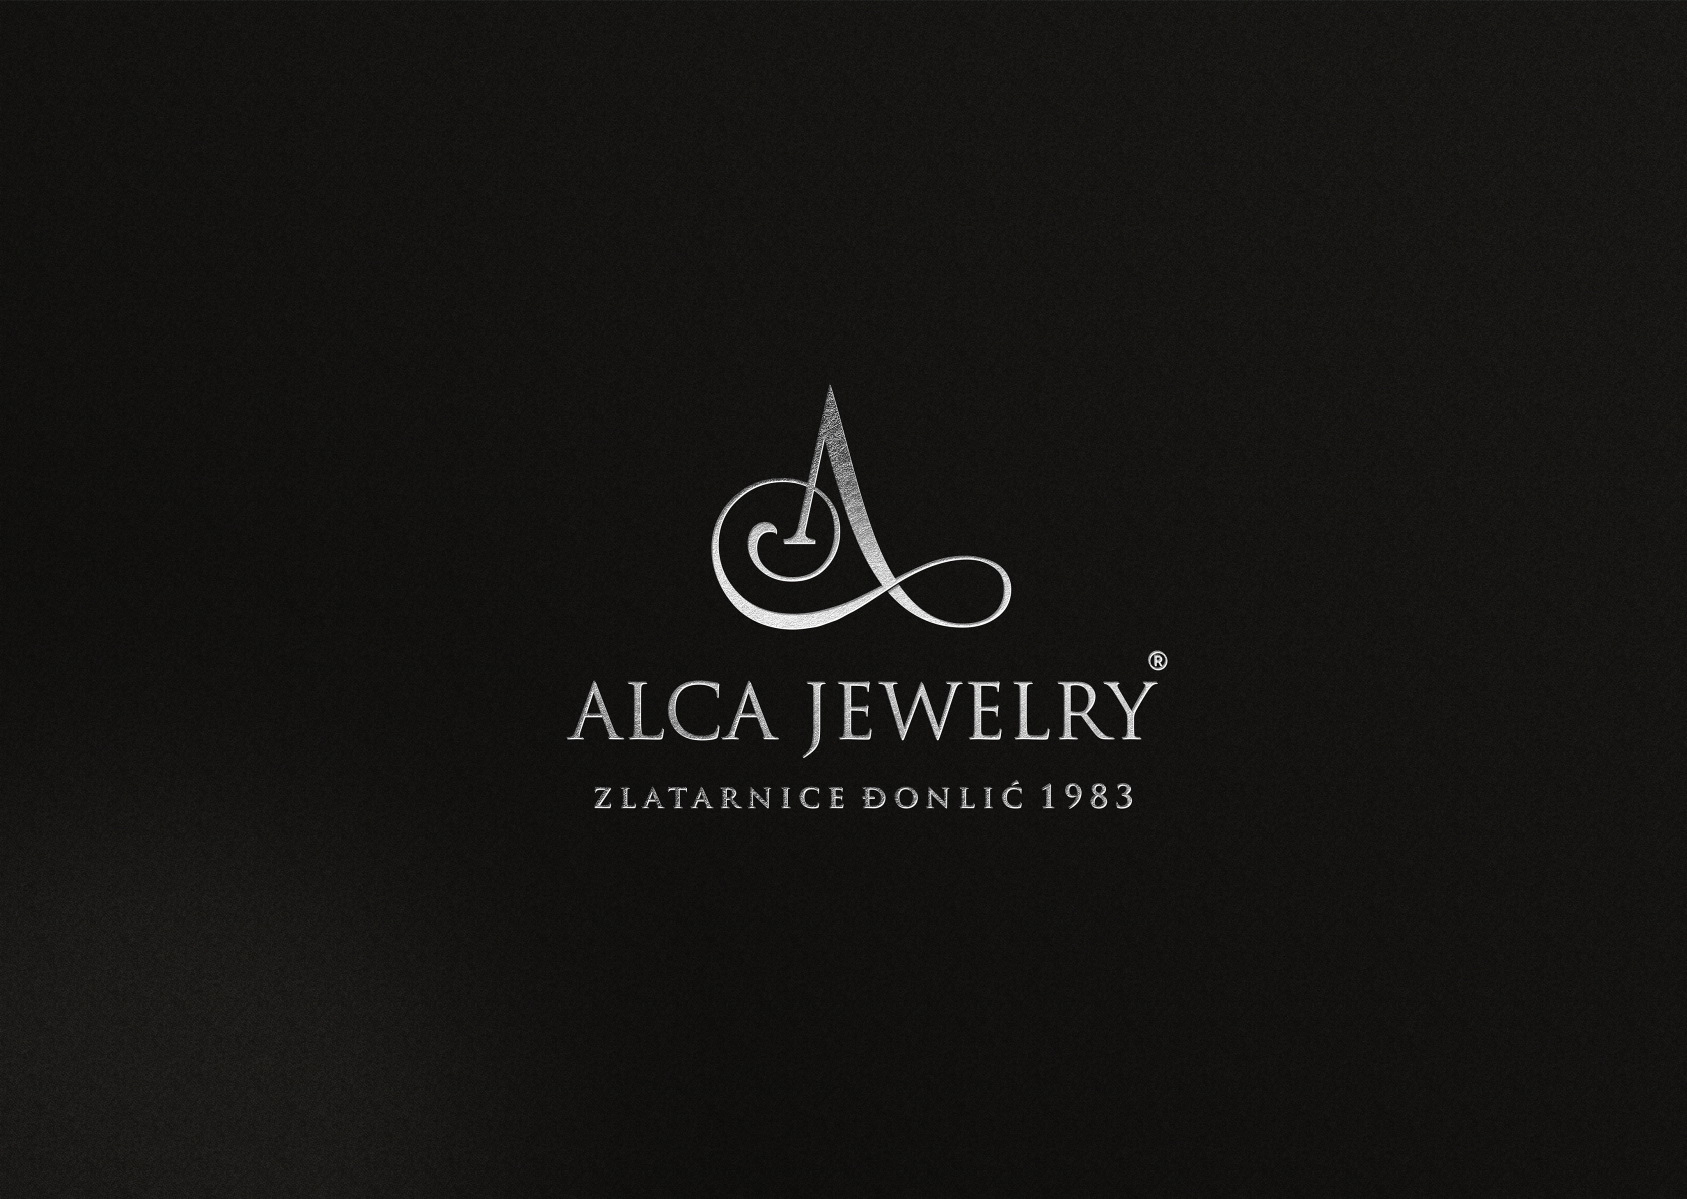 Alca Jewellery